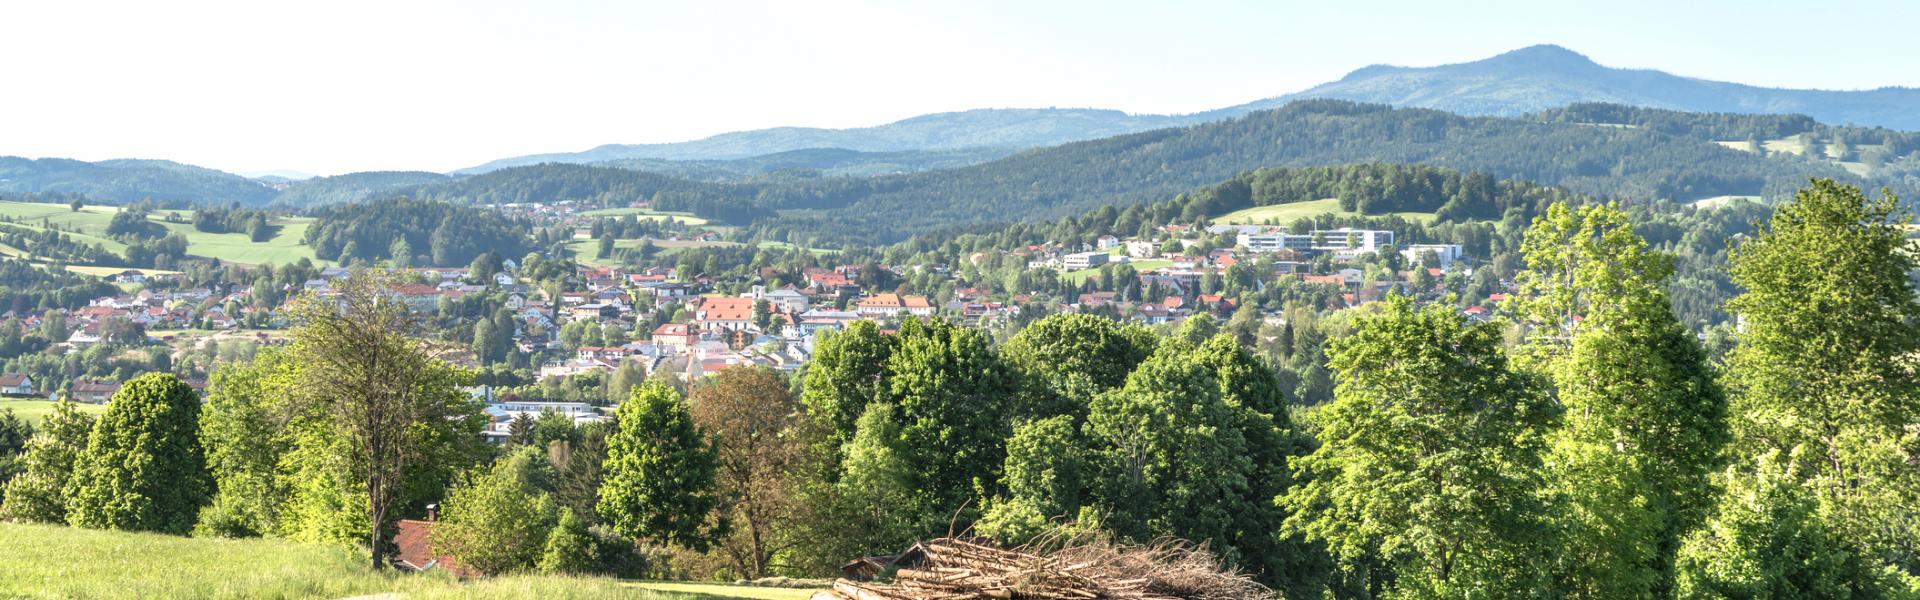 Ferienwohnungen und Ferienhäuser in Bad Birnbach - HomeToGo